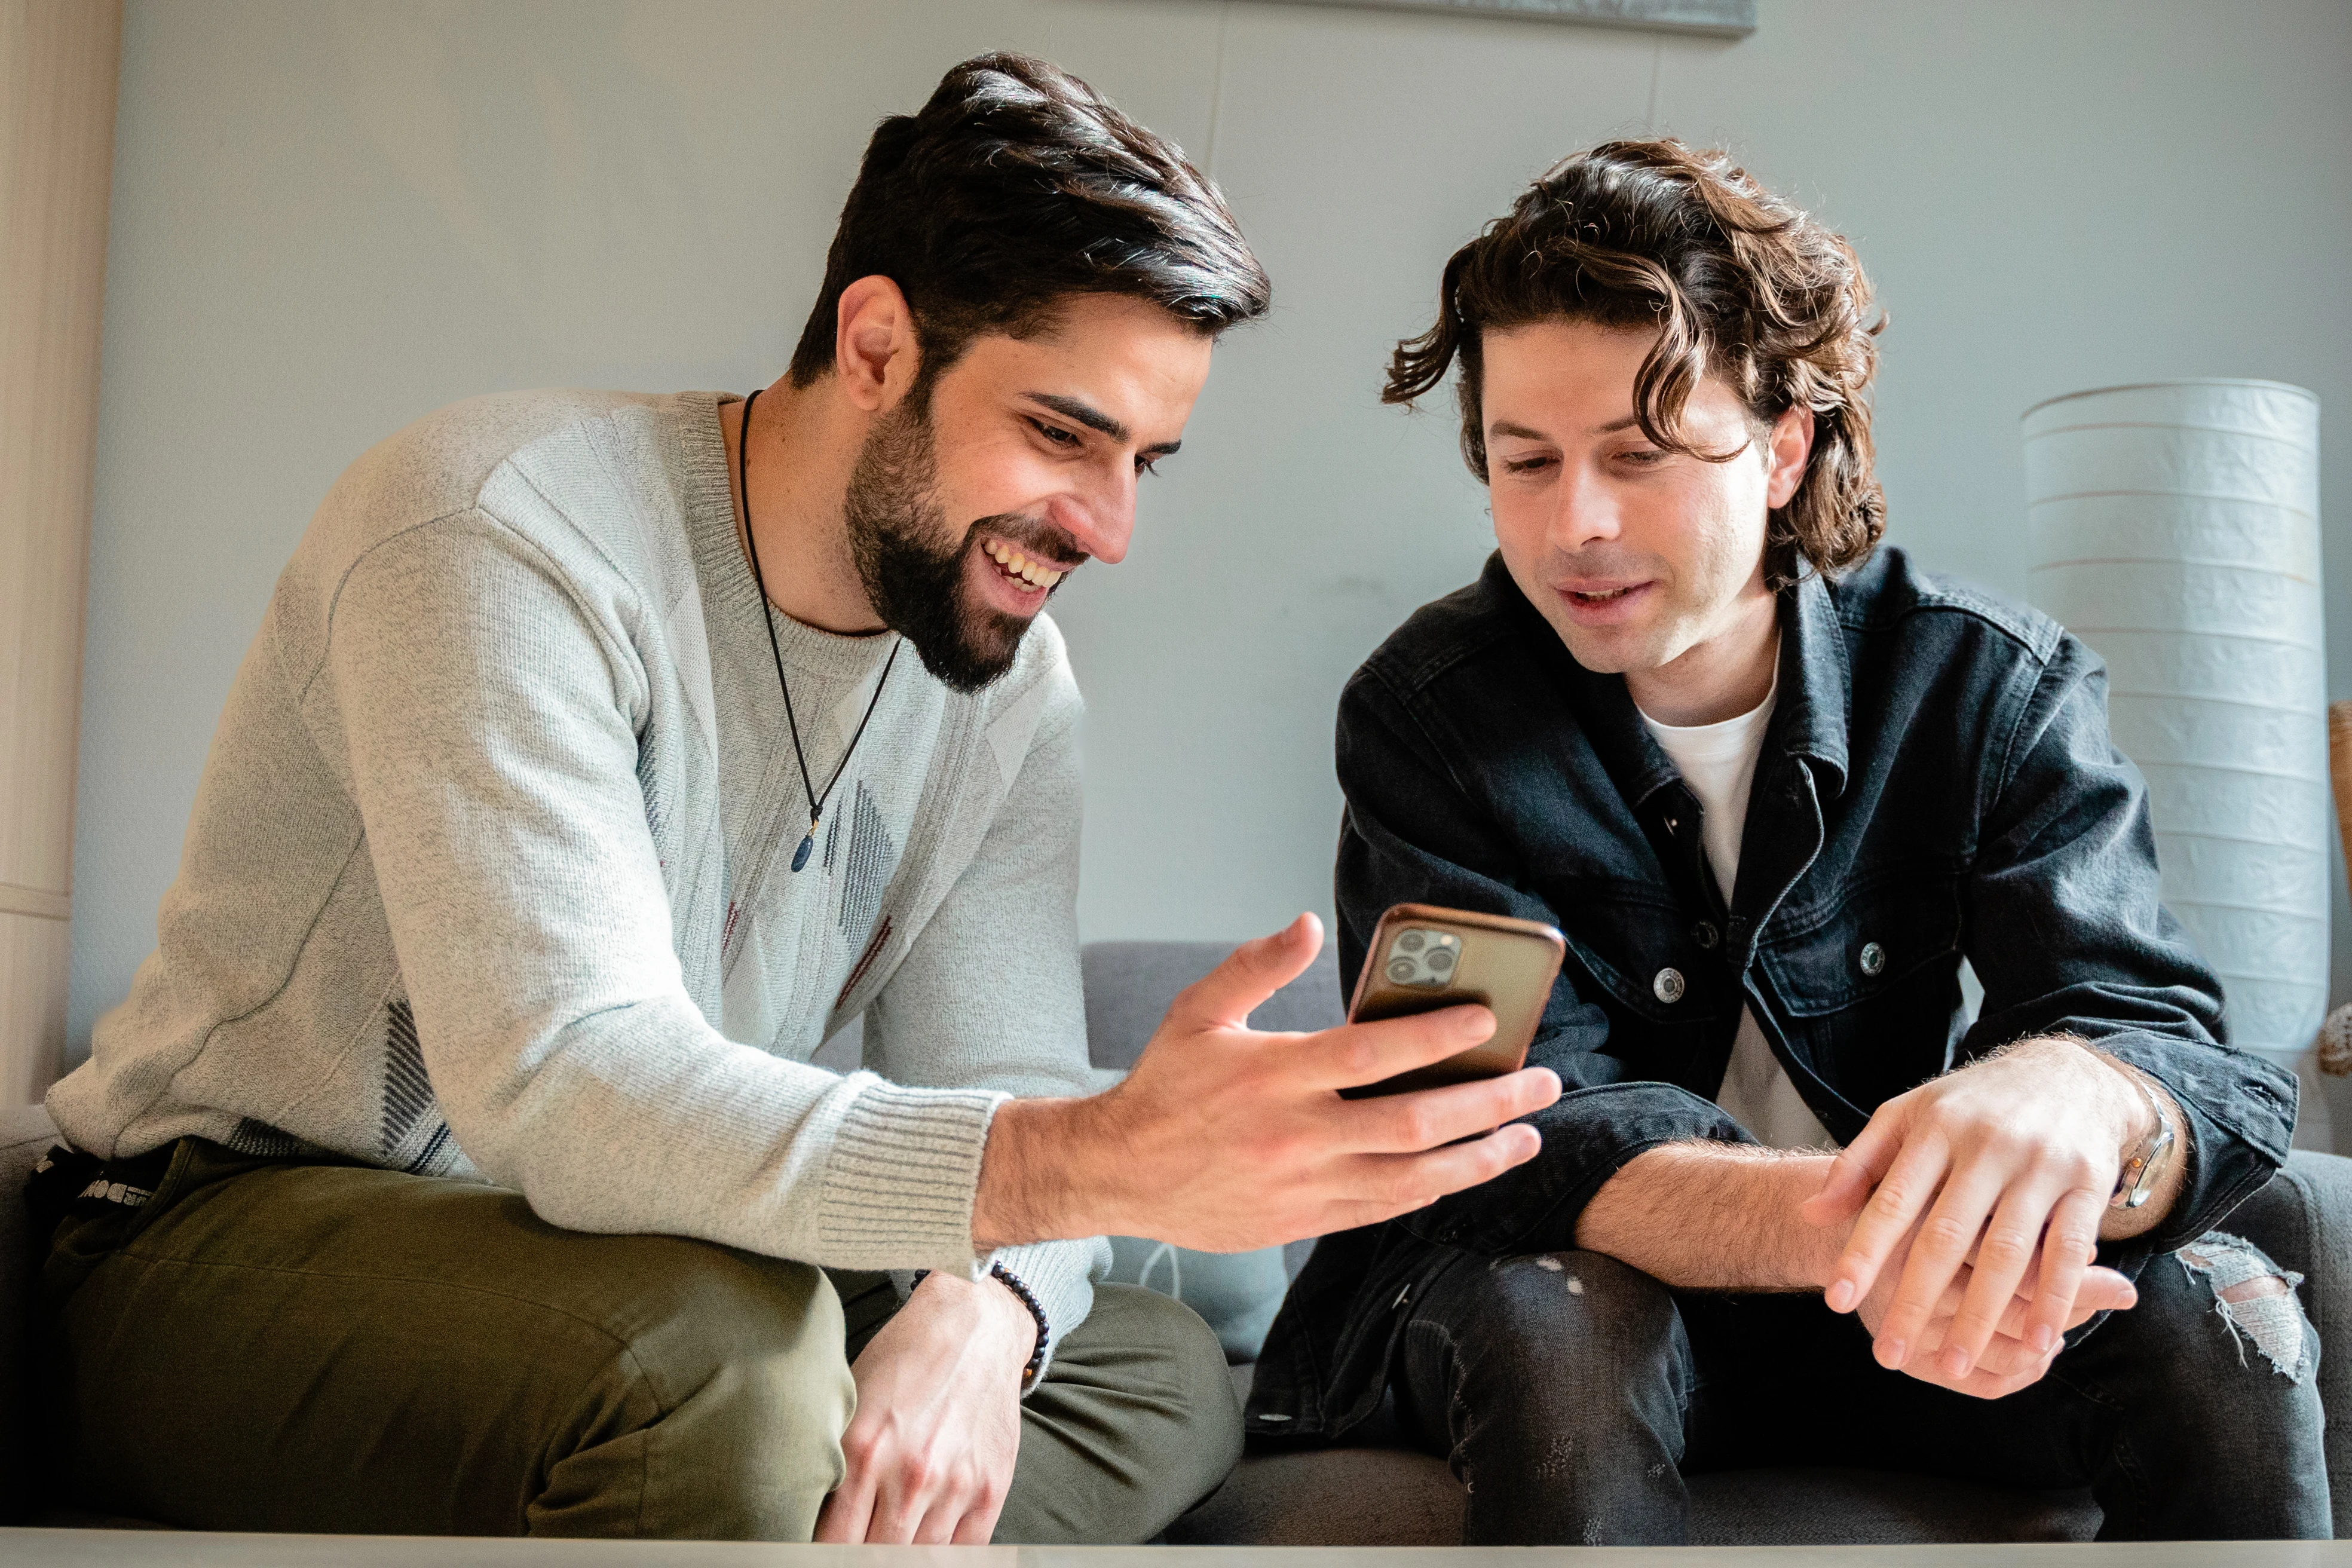 دو مرد وب سایت RefugeeHelp را در تلفون های خود نگاه می کنند.